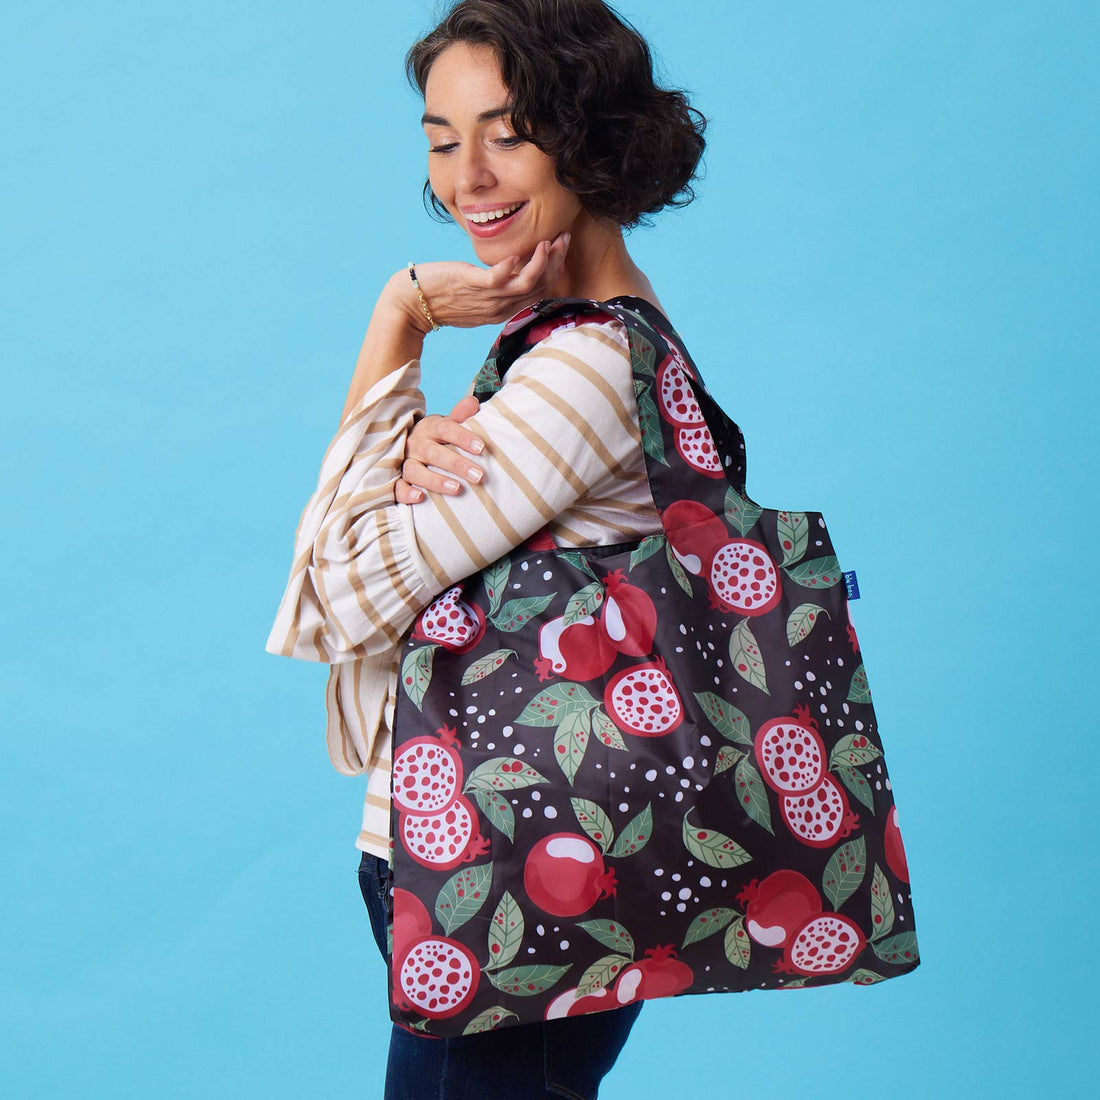 Pomegranate Garden Blu Bag Reusable Shopping Bag - Machine Washable Reusable Shopping Bag - rockflowerpaper